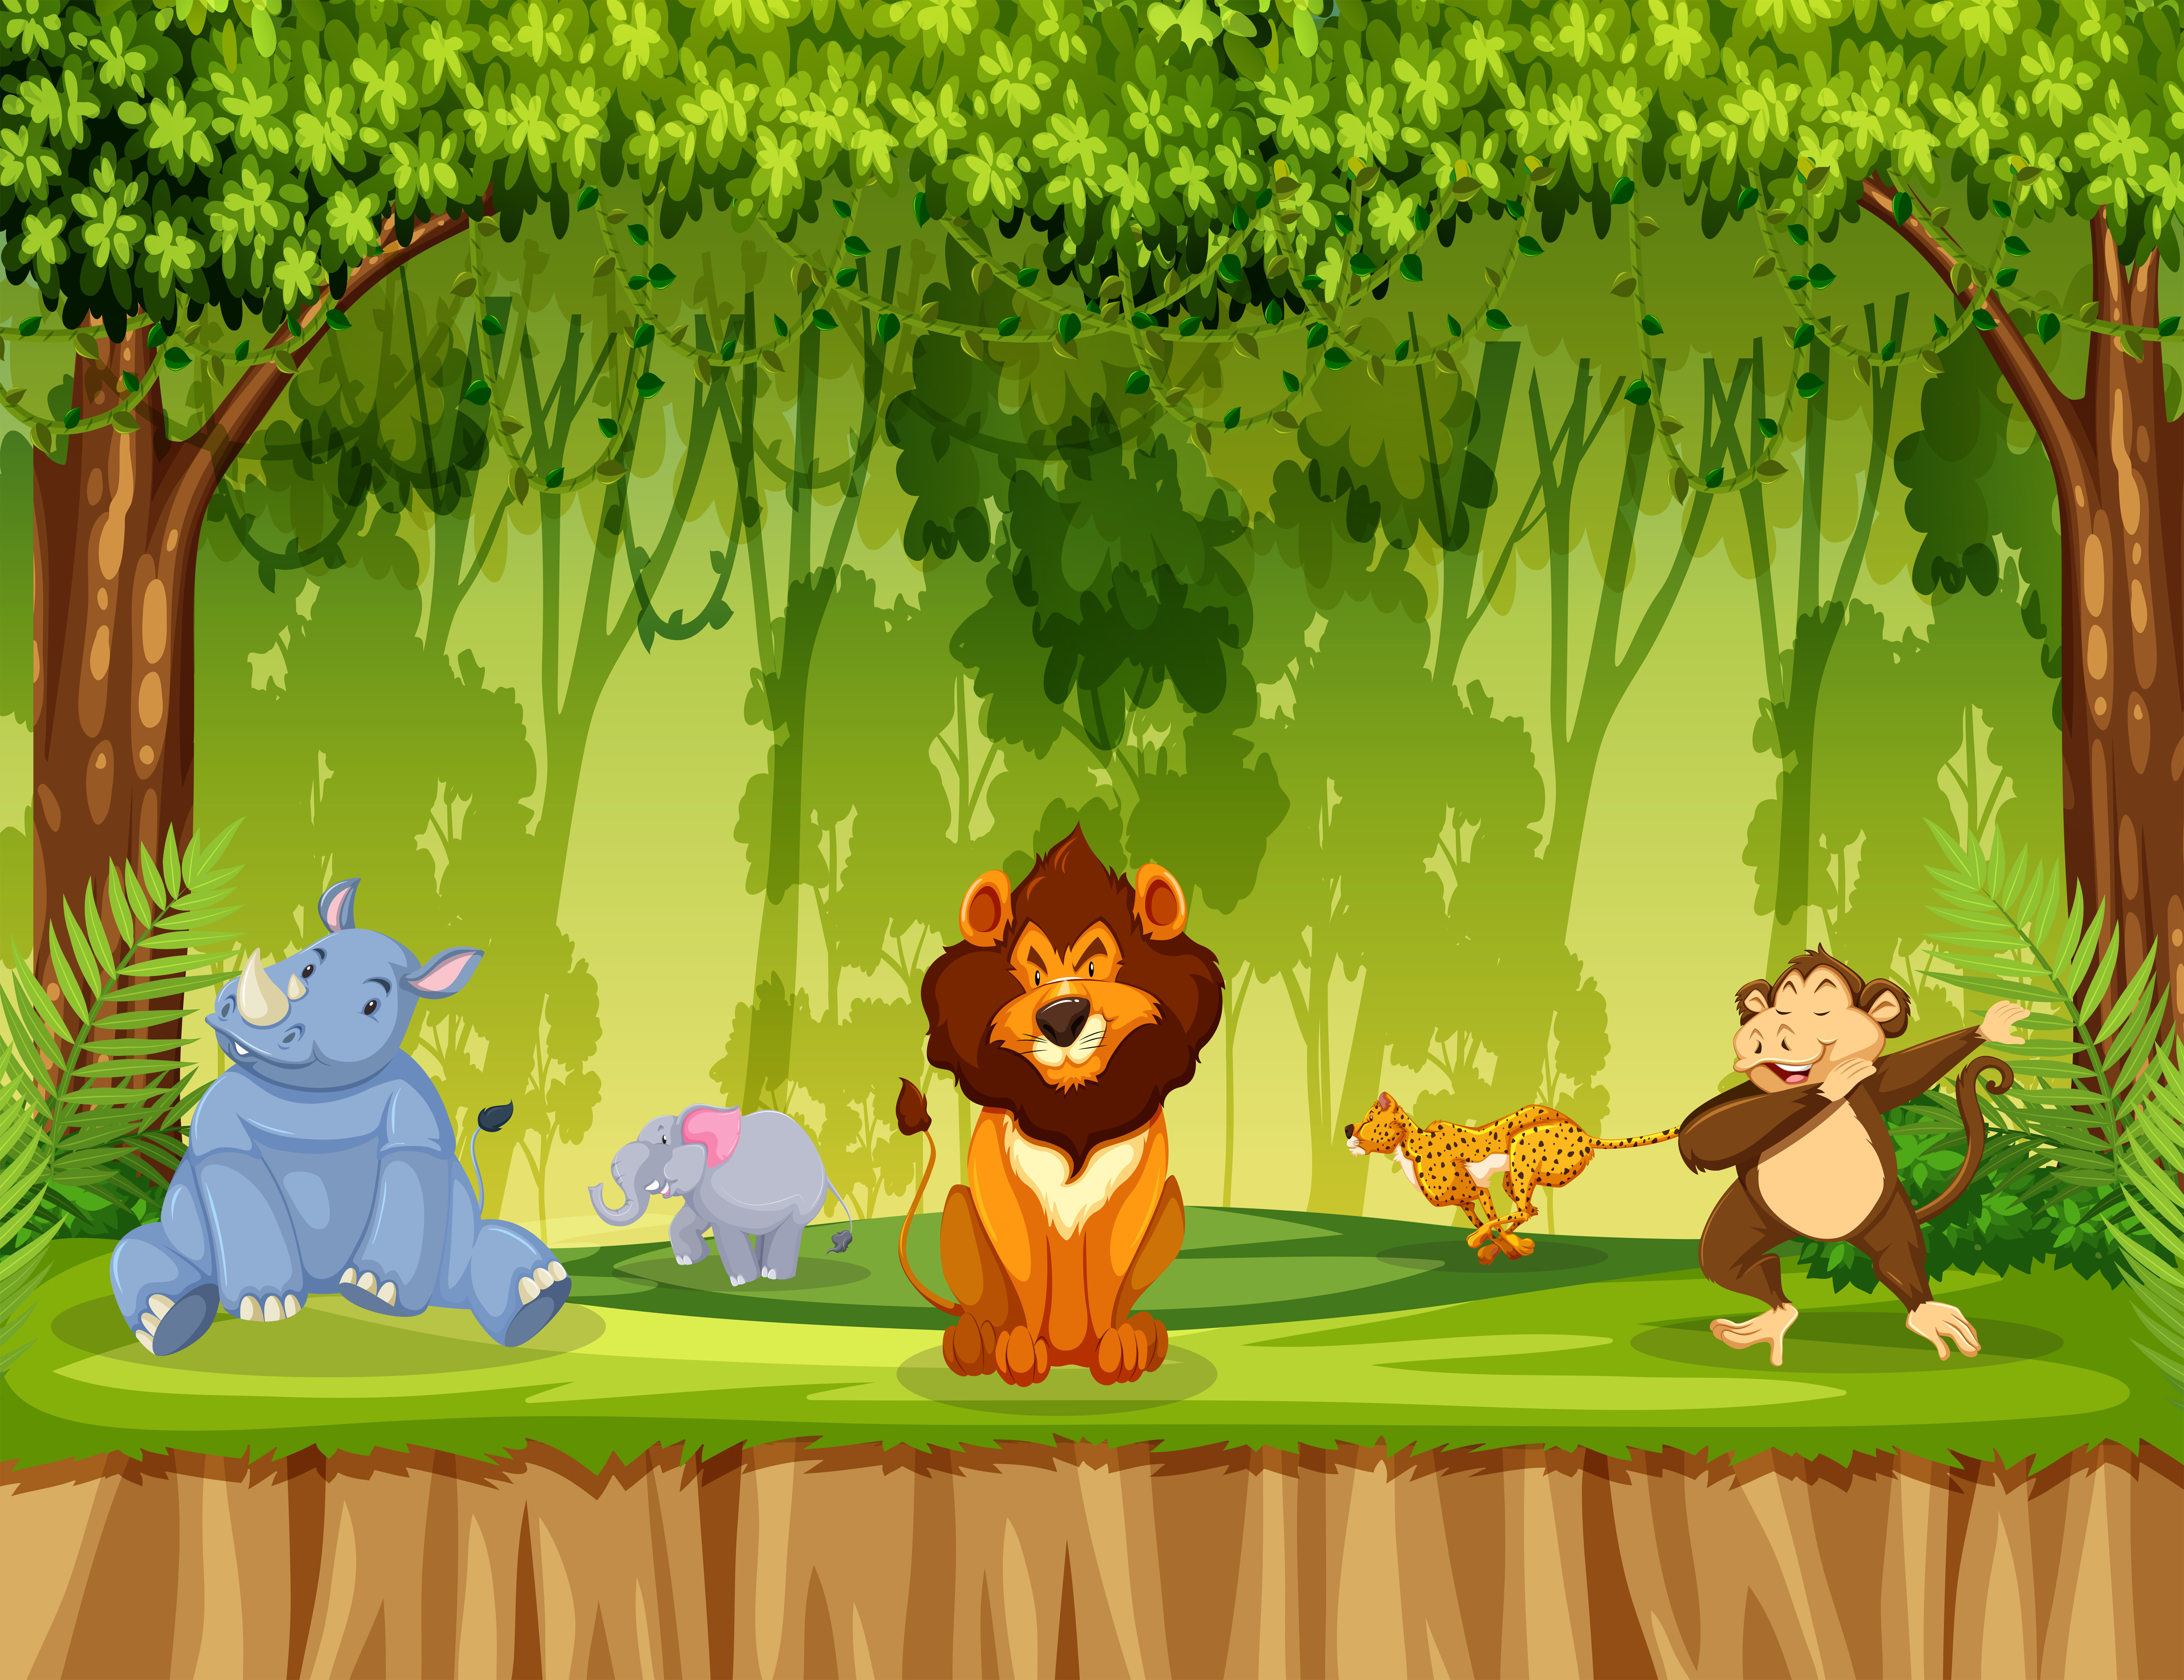 Animals in jungle  scene Download Free Vectors Clipart 